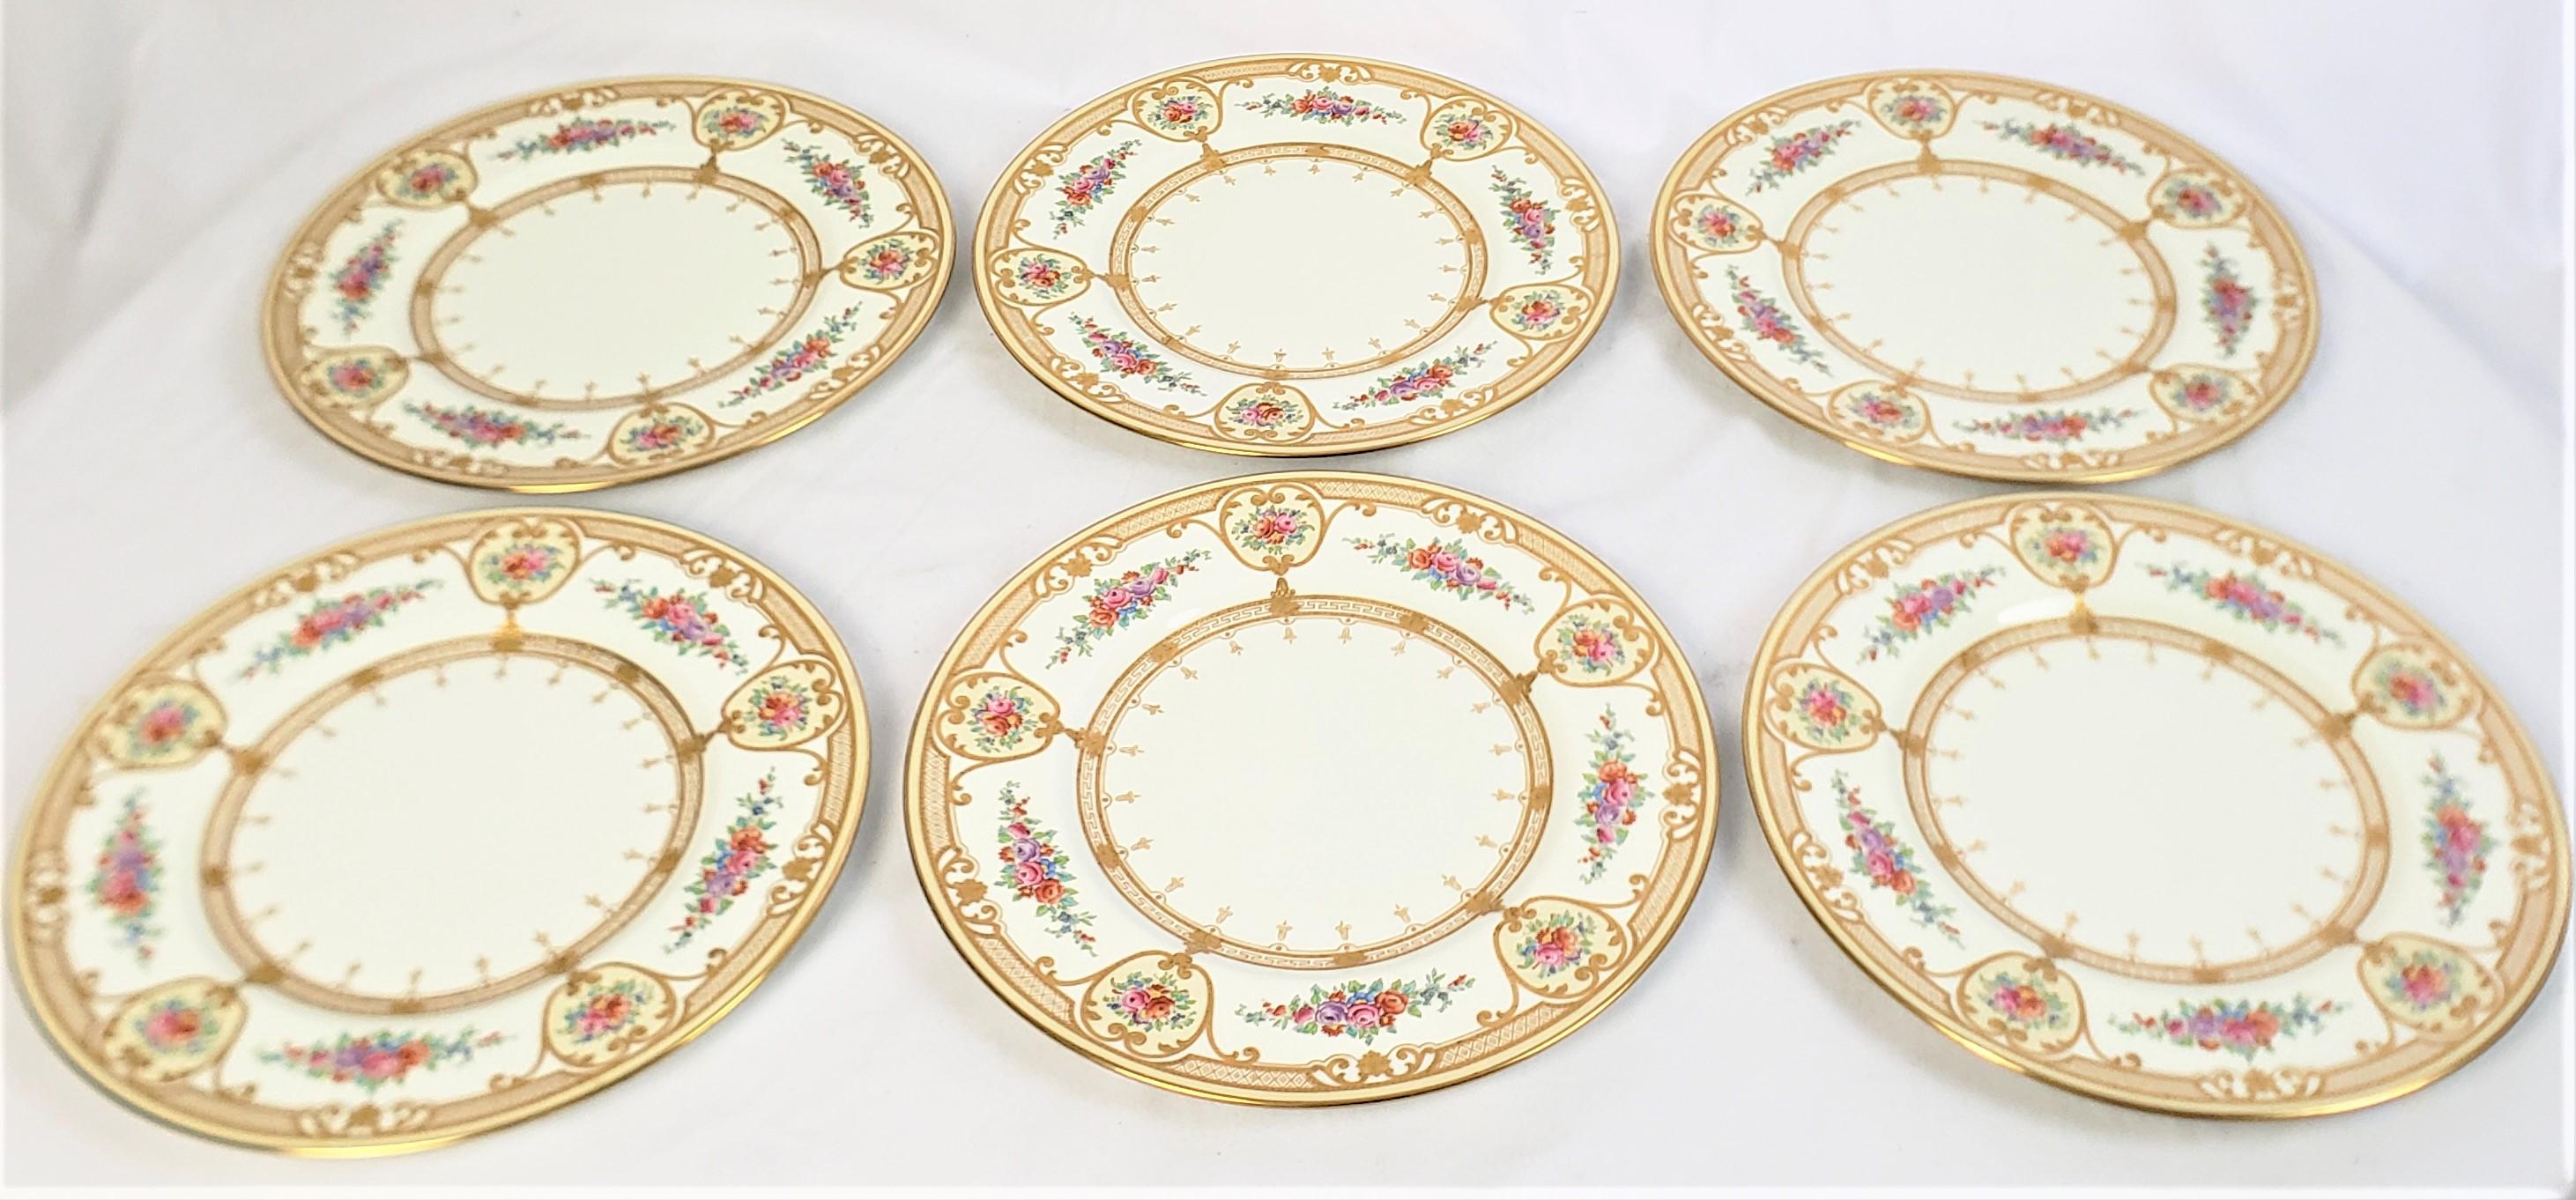 Ce jeu de douze assiettes a été fabriqué par la célèbre usine Wedgewood en Angleterre vers 1900 dans un style victorien. Les assiettes sont en porcelaine avec un fond blanc orné de bouquets de fleurs printanières peints à la main et rehaussés d'une